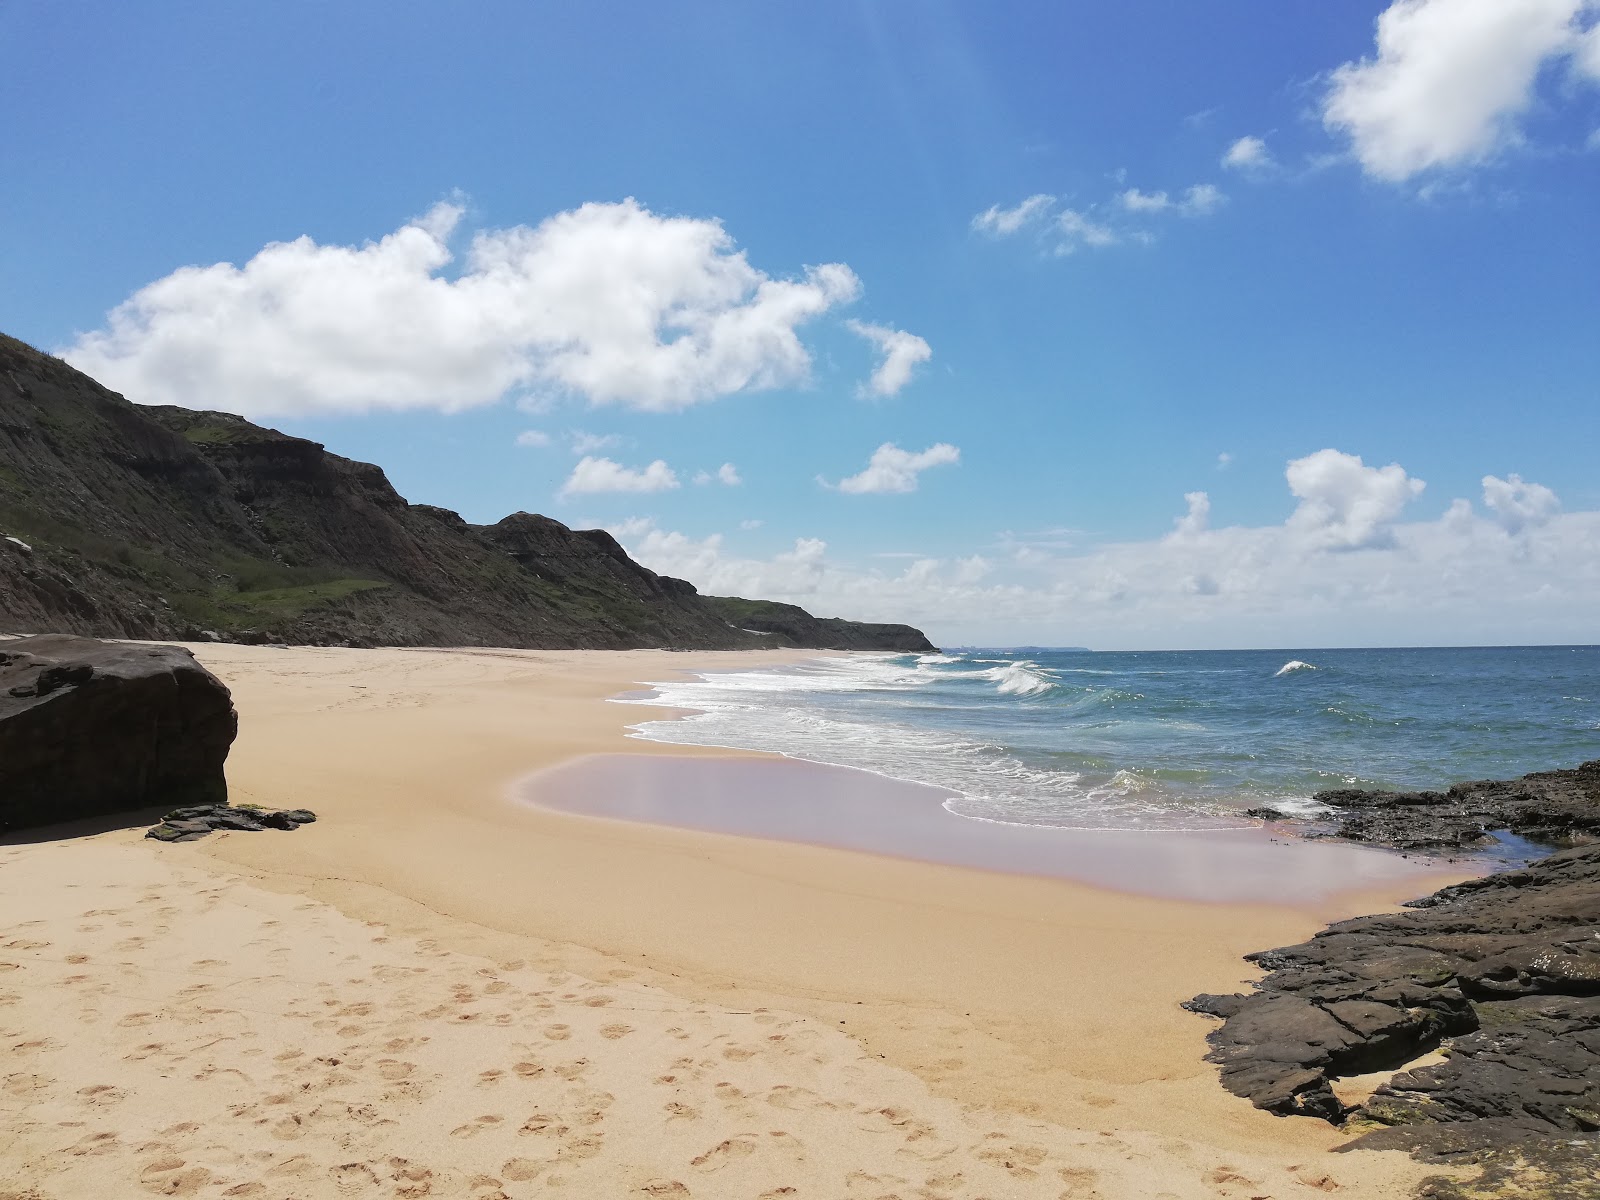 Fotografie cu Praia do Areal Sul cu o suprafață de nisip fin strălucitor